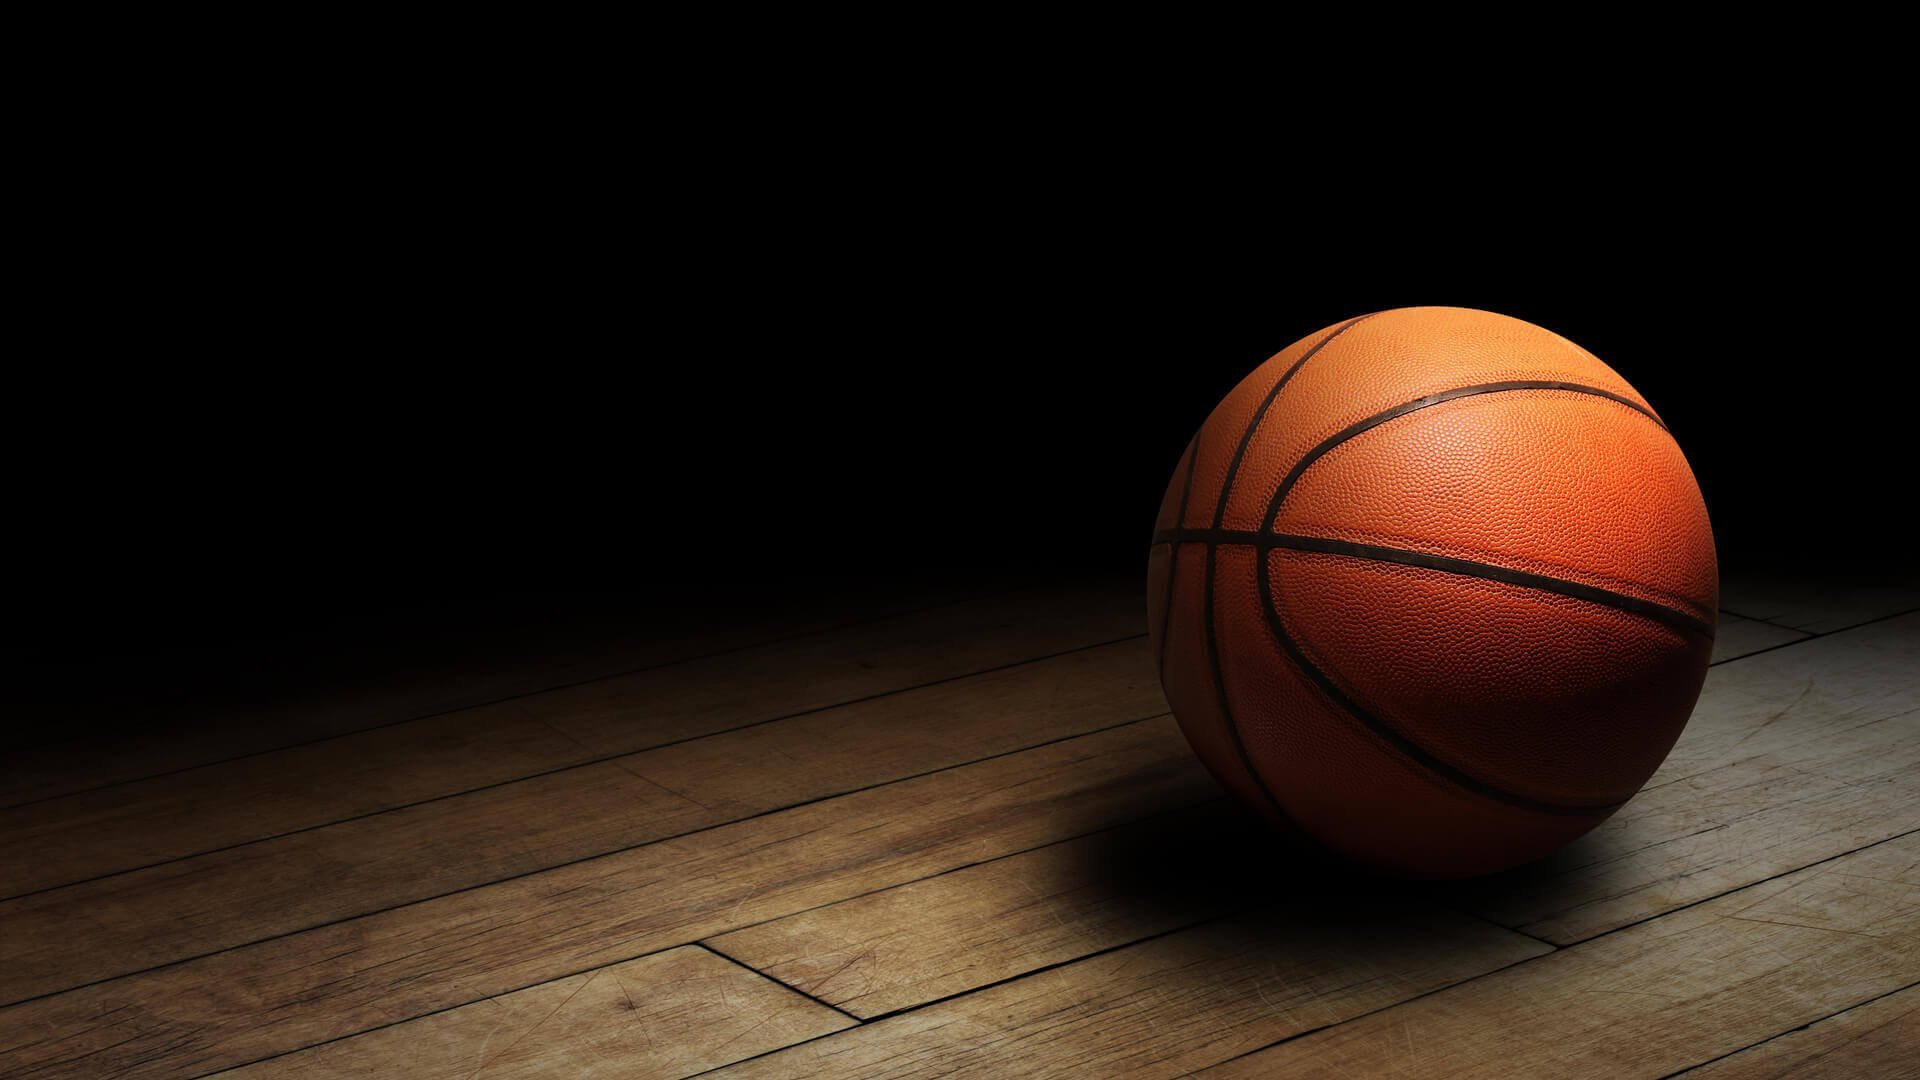 Спортивный мяч в баскетболе. Баскетбольный мяч. Баскетбол фон. Баскетбольный мяч фон. Красивые баскетбольные мячи.